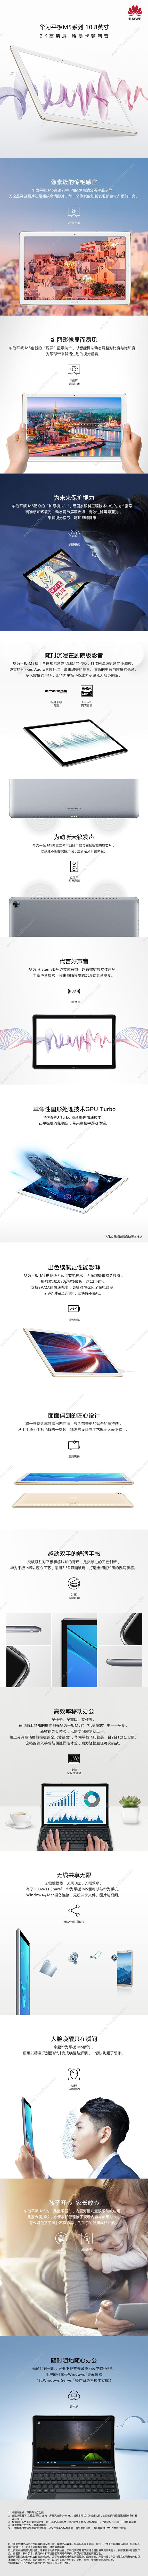 华为 Huawei M5 平板电脑 10.8英寸 通话版 4+64G（灰） 平板电脑